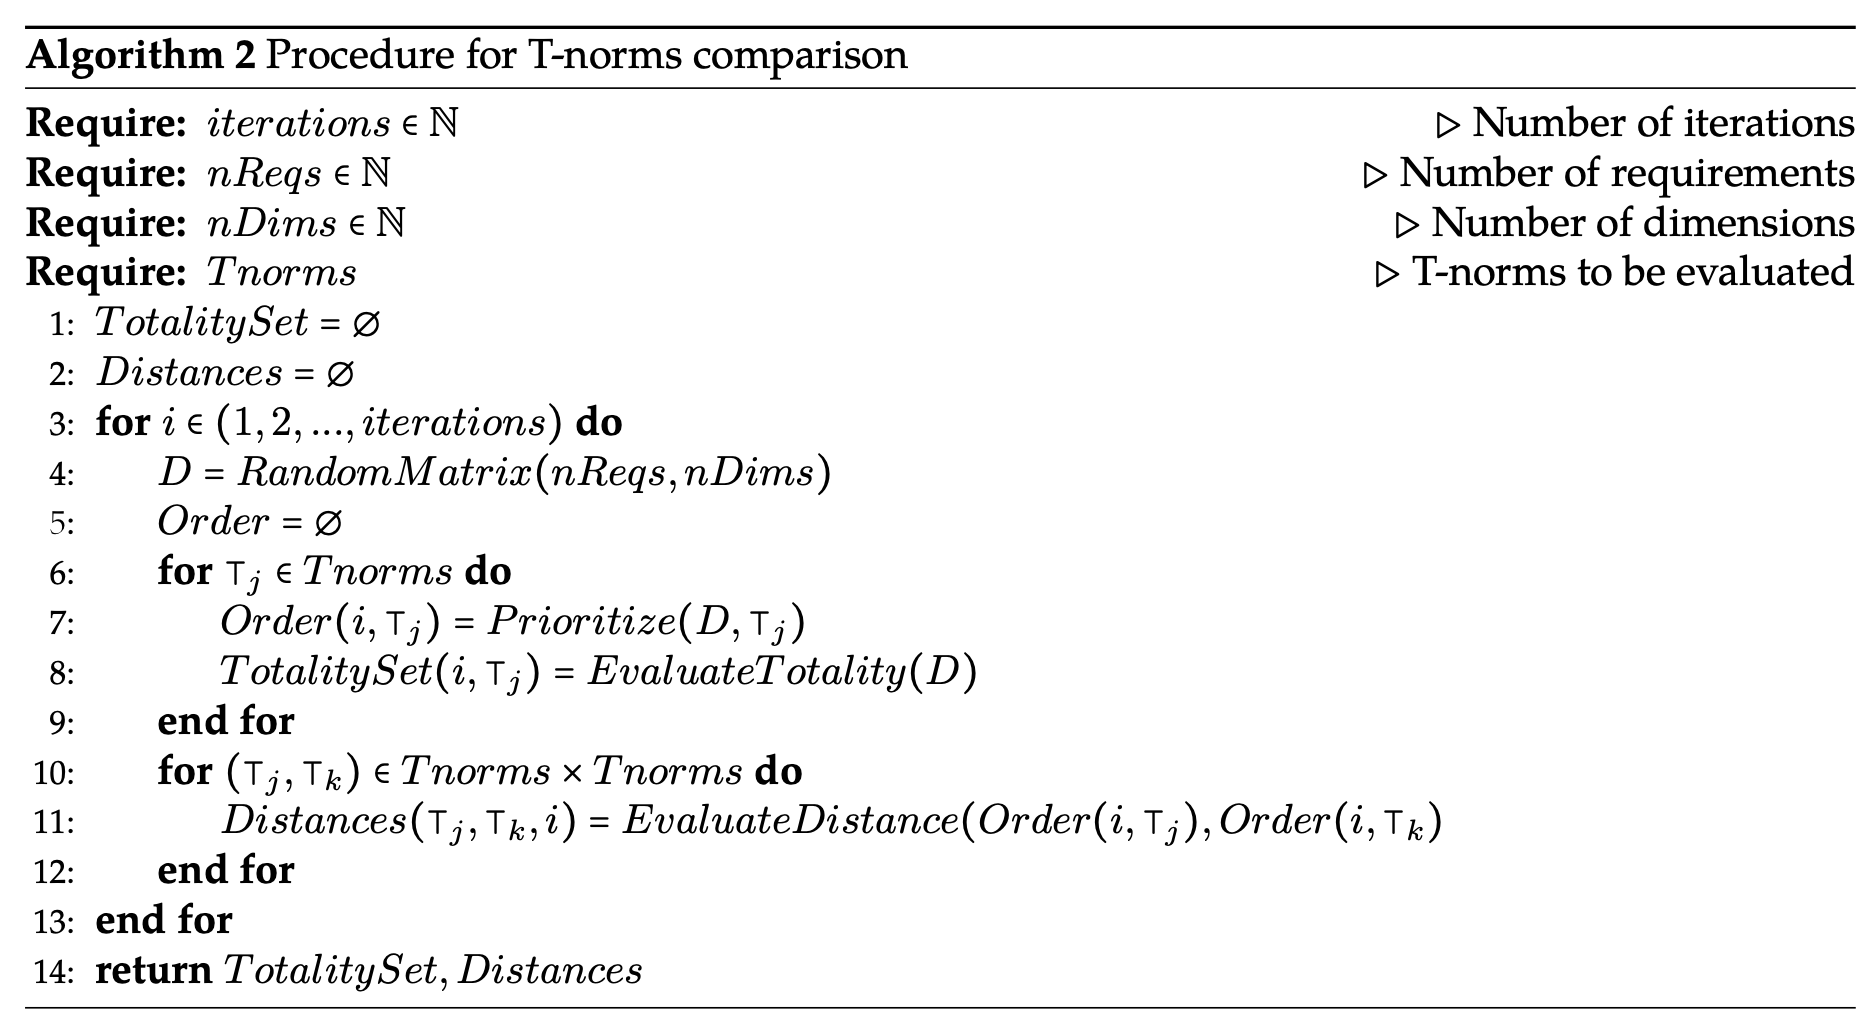 Procedure for T-norms comparison